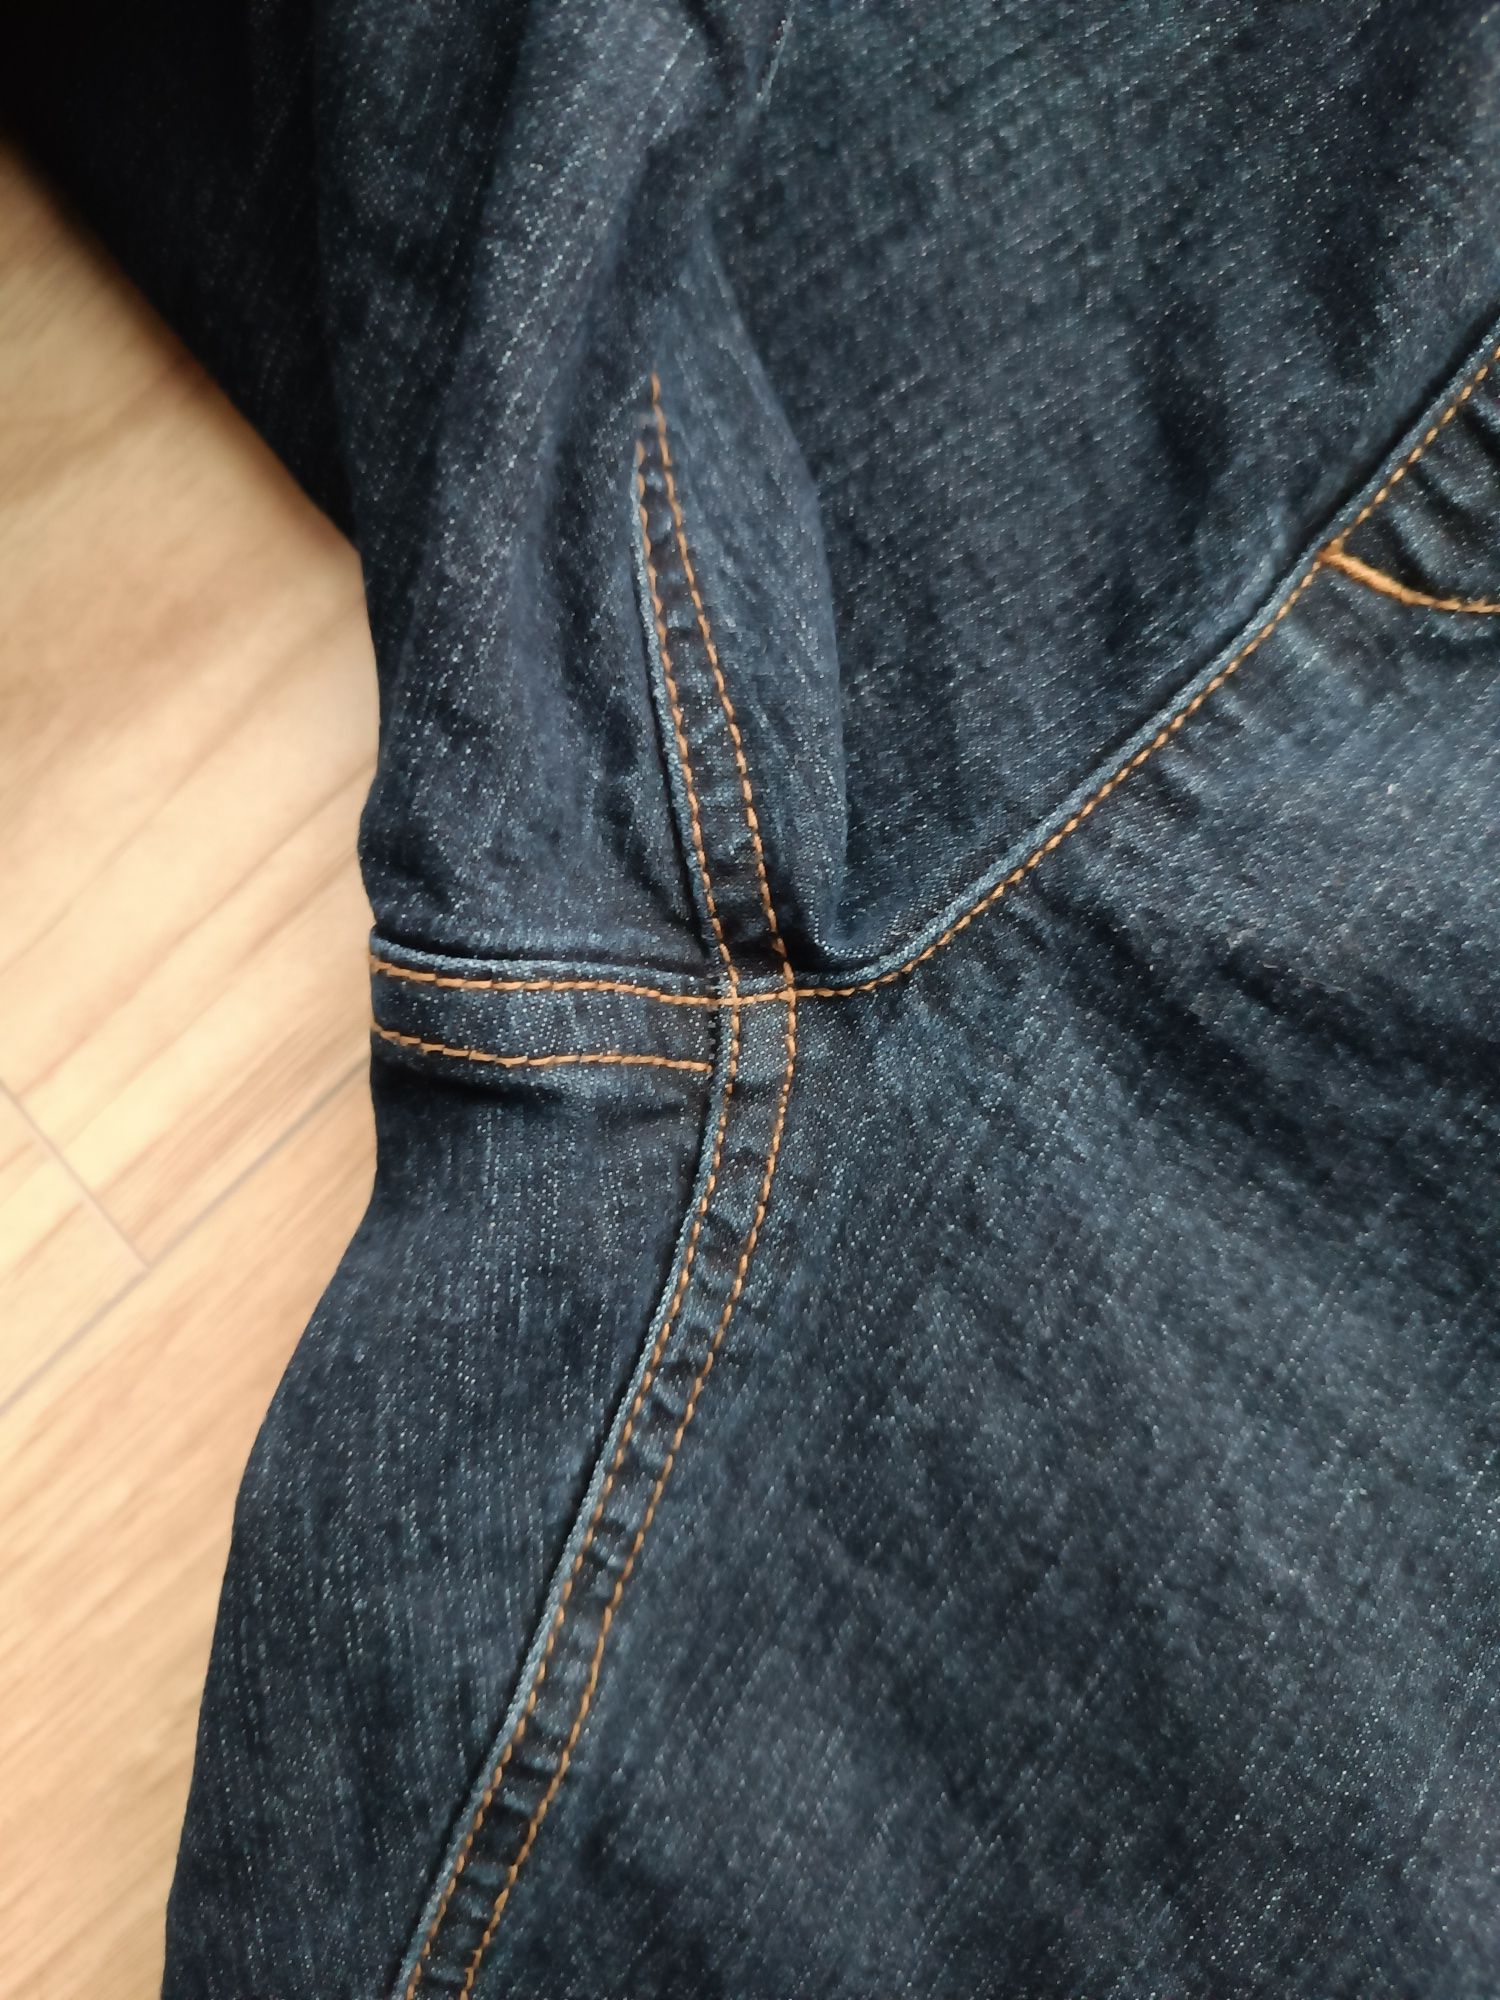 Granatowe długie spodnie jeansy jegginsy L 40